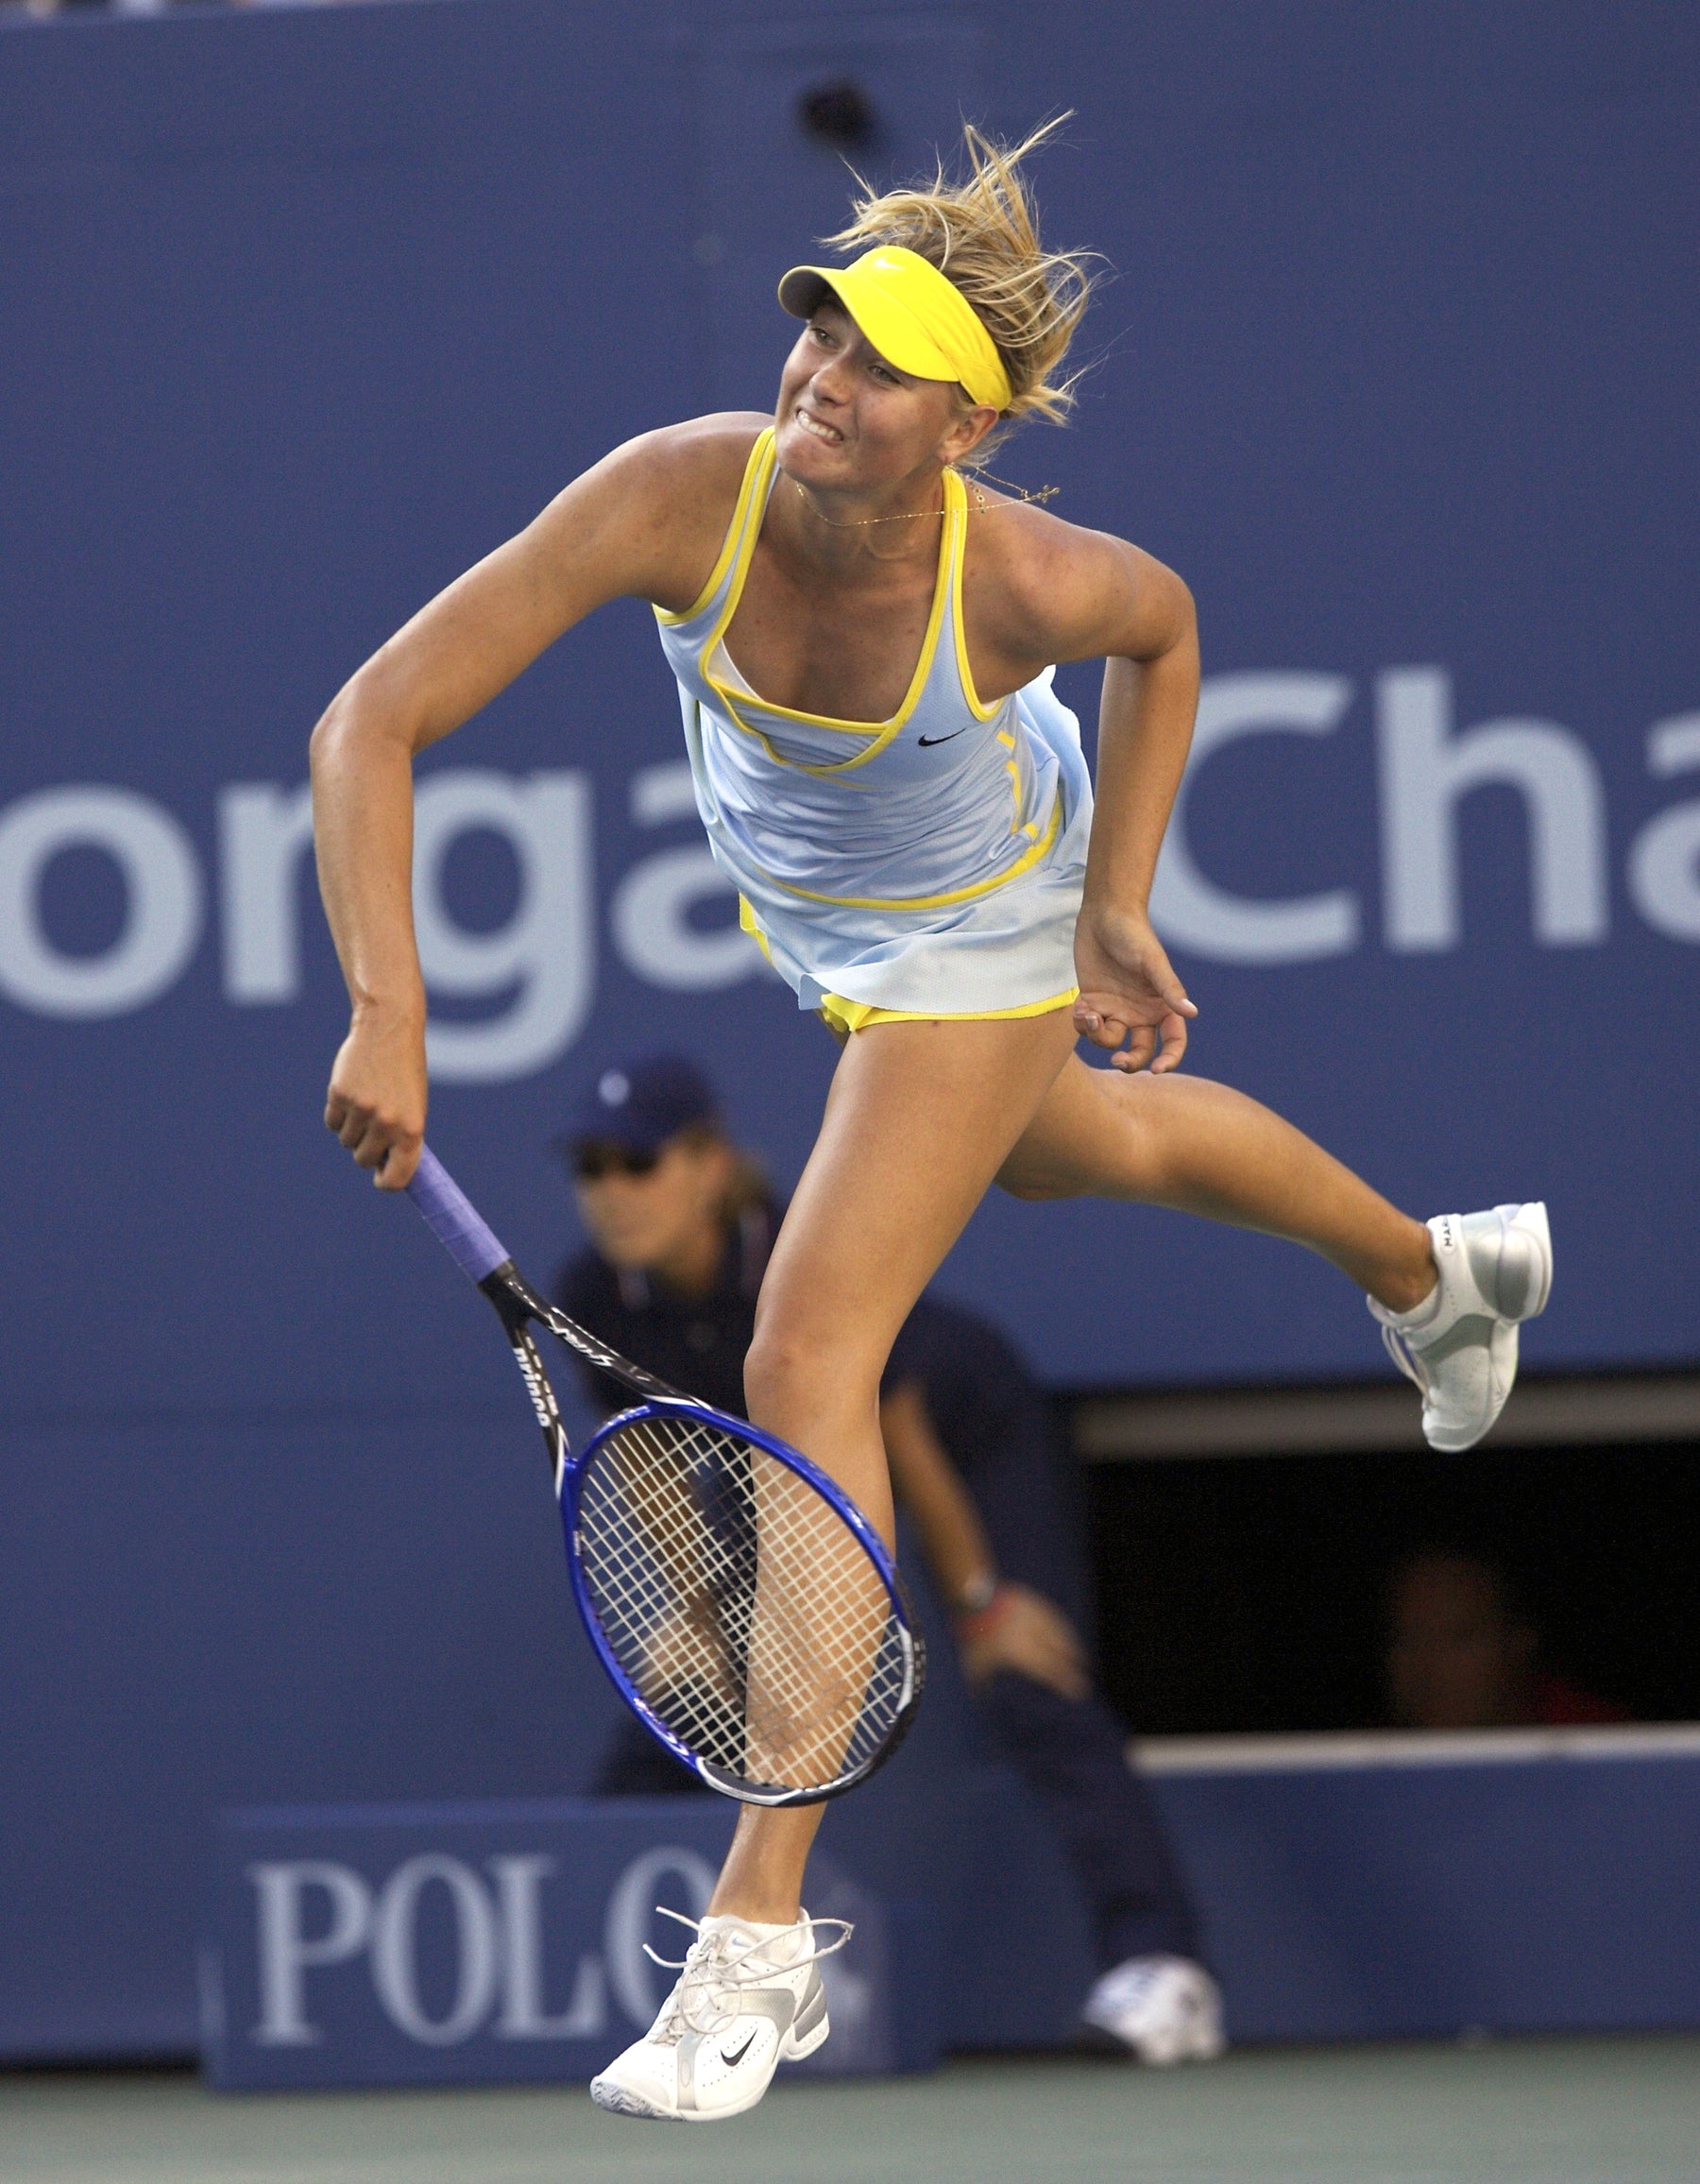 Maria Sharapova at the US Open